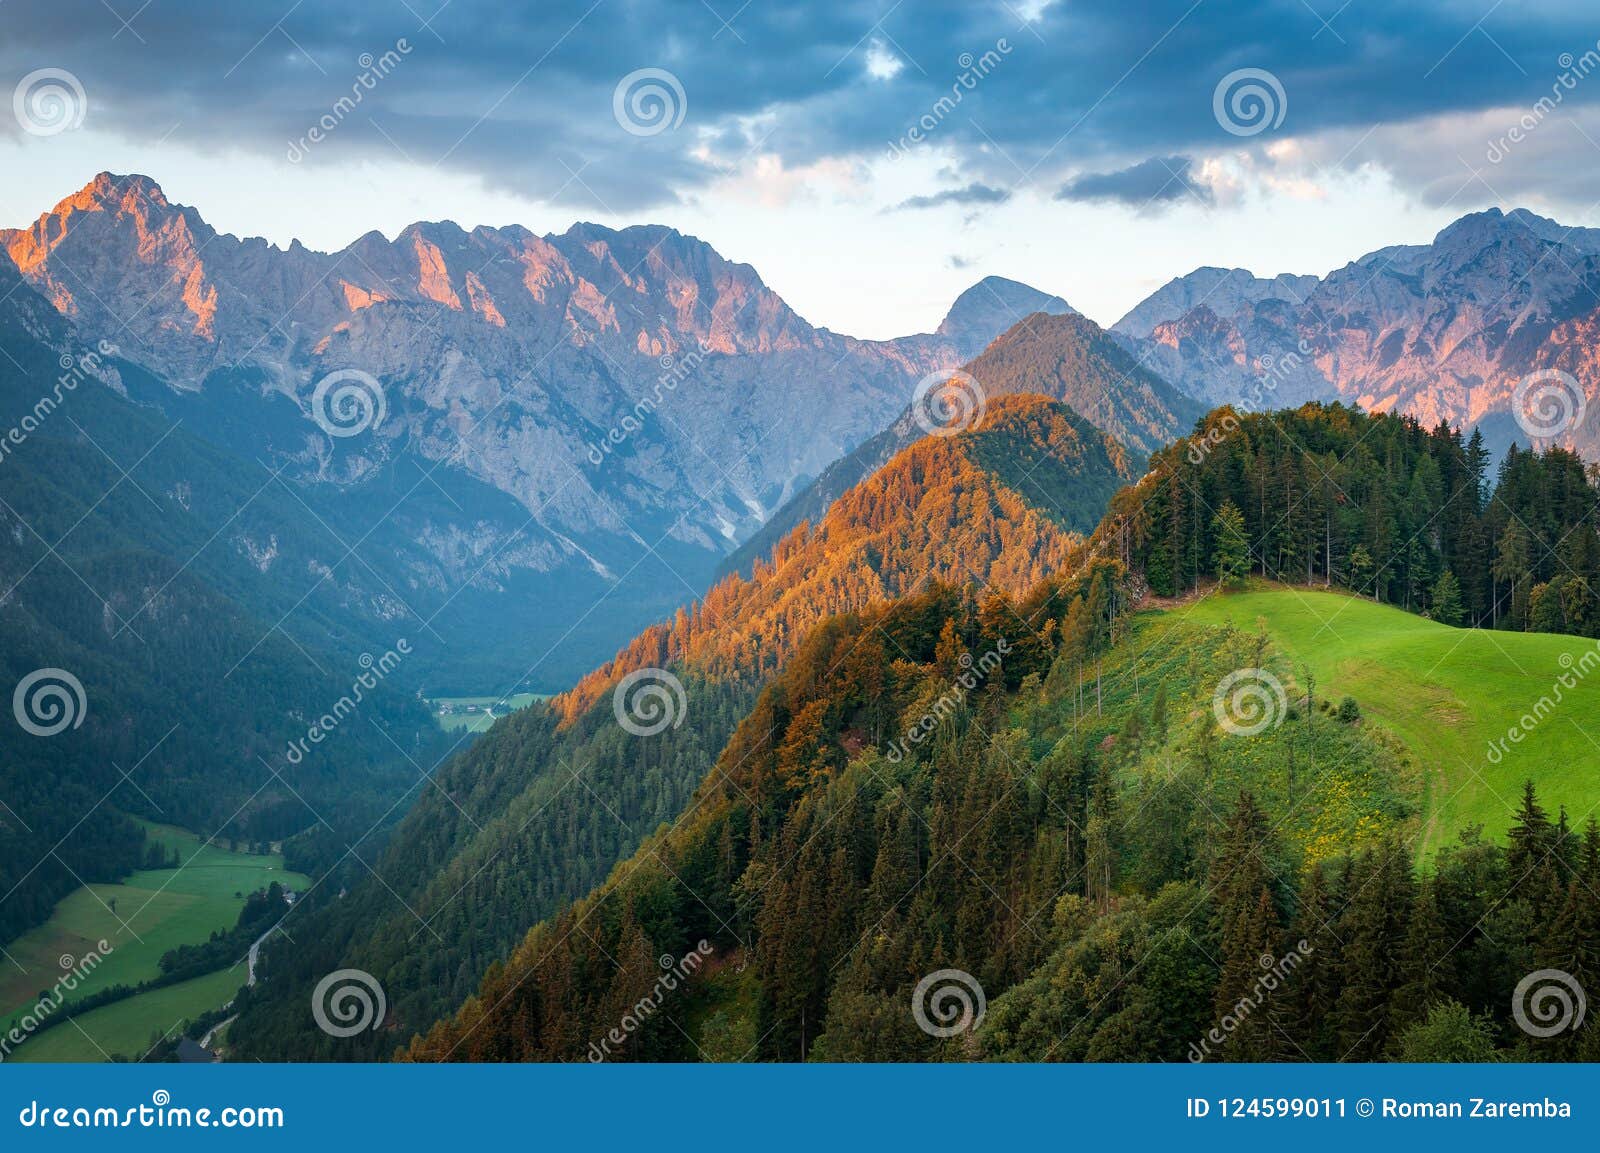 slovenian alps at sunrise, logar valley